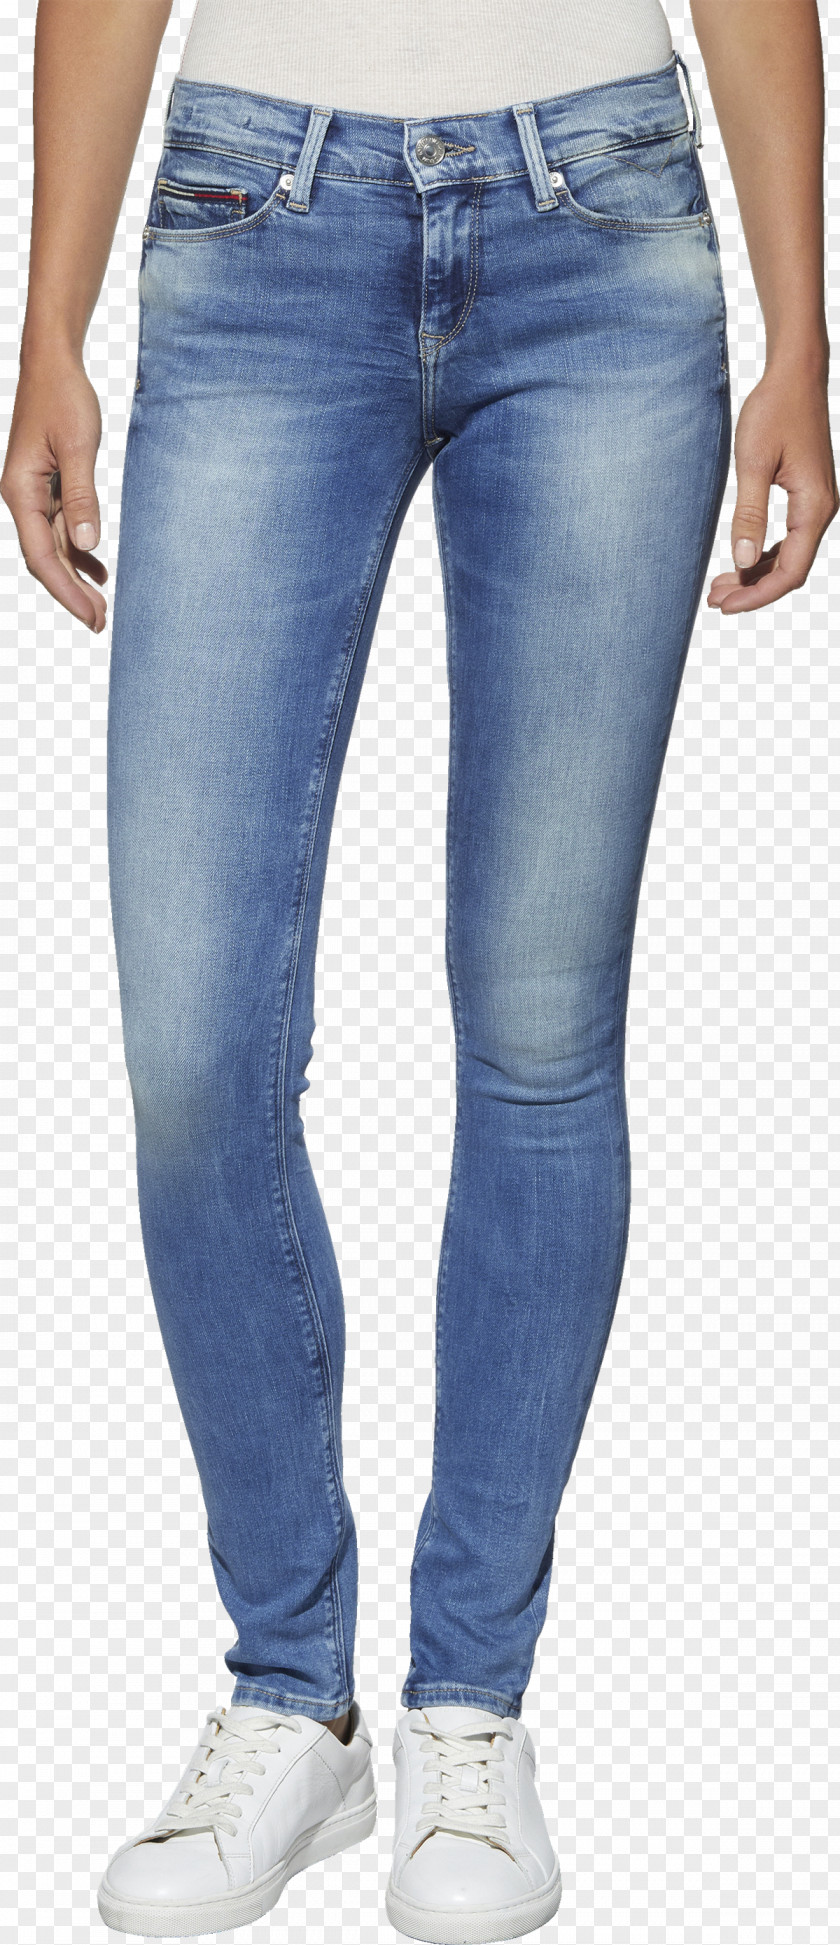 Jeans Slim-fit Pants Jack & Jones Denim Blue PNG